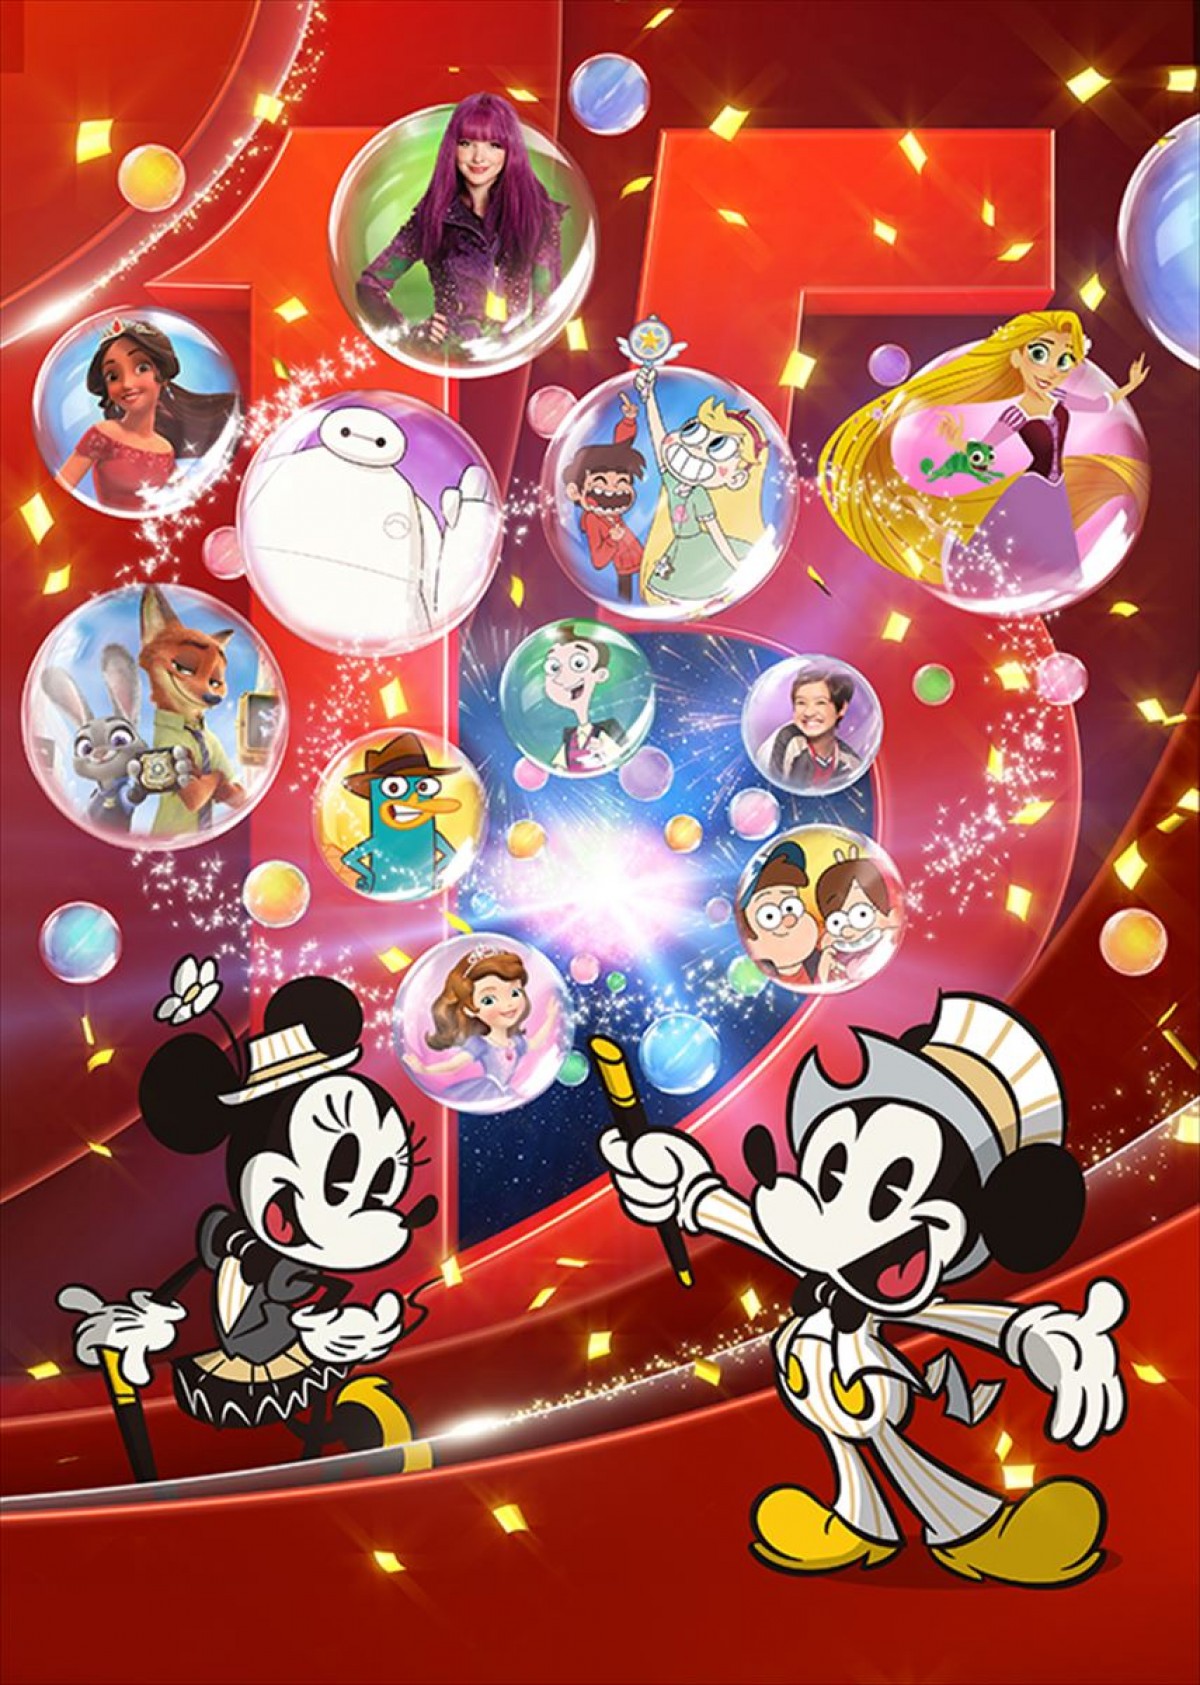 夢と魔法を届けてくれる「ディズニー・チャンネル」が11月18日に開局15周年を迎える！